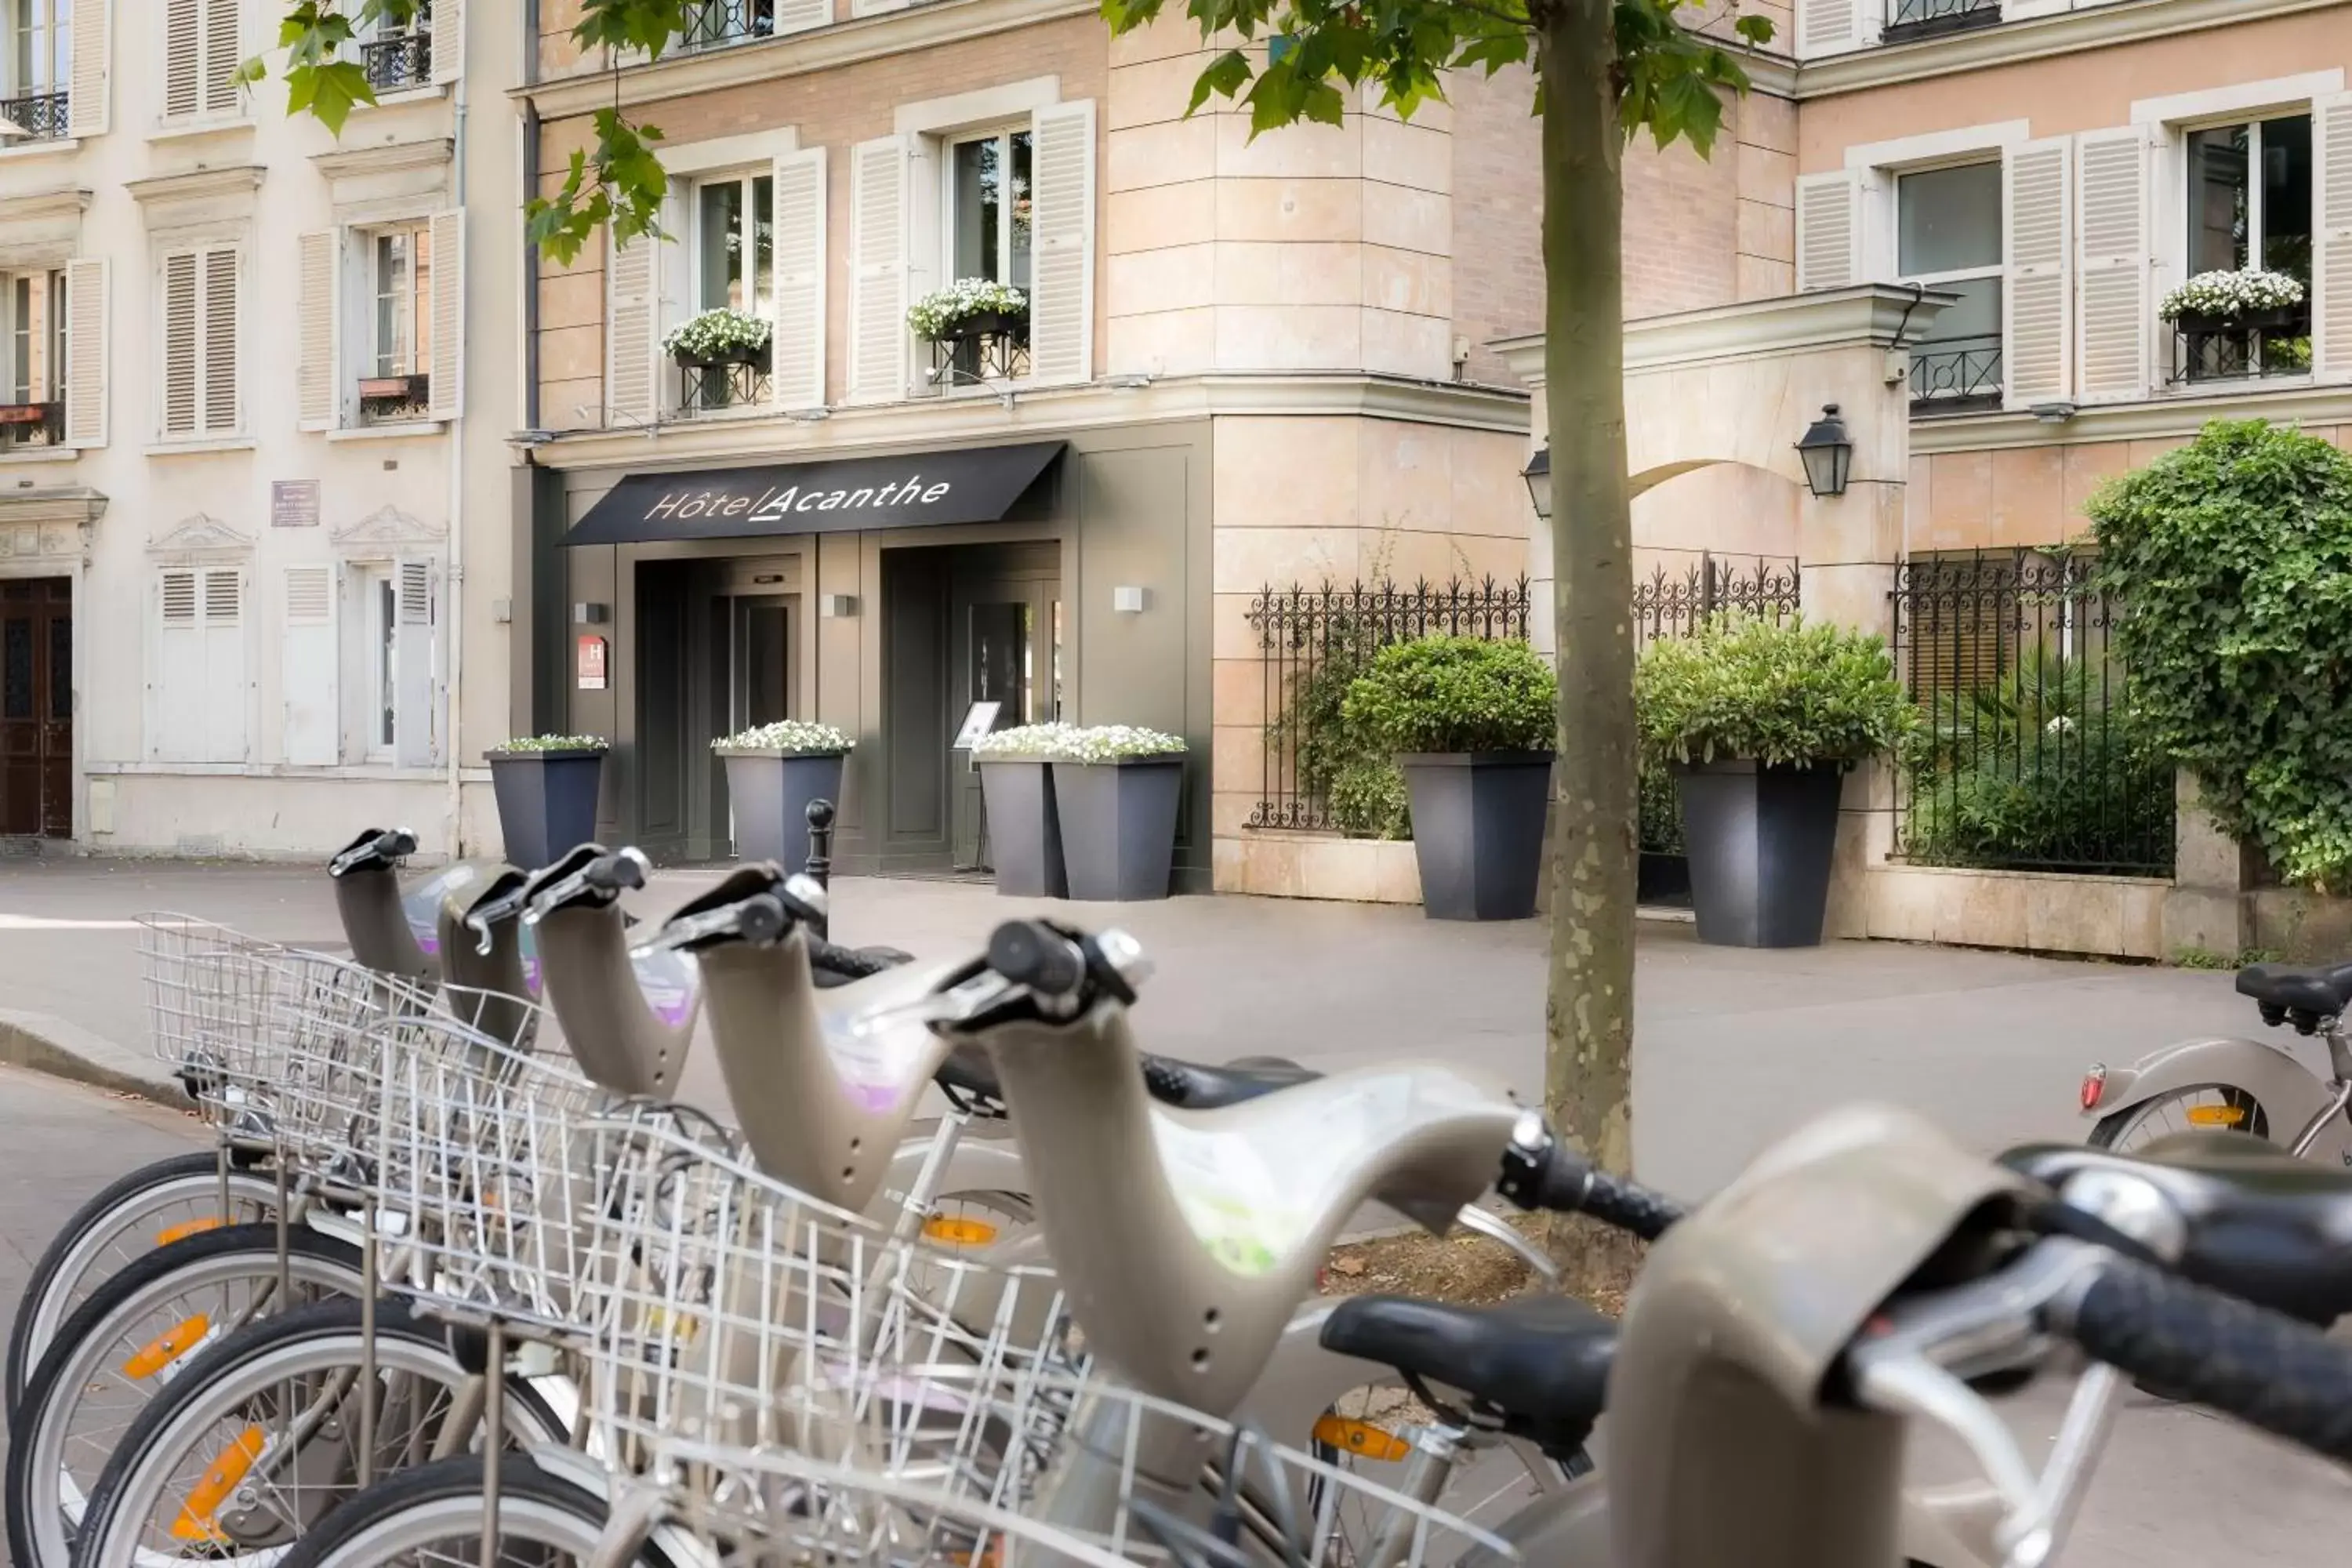 Facade/entrance in Hotel Acanthe - Boulogne Billancourt